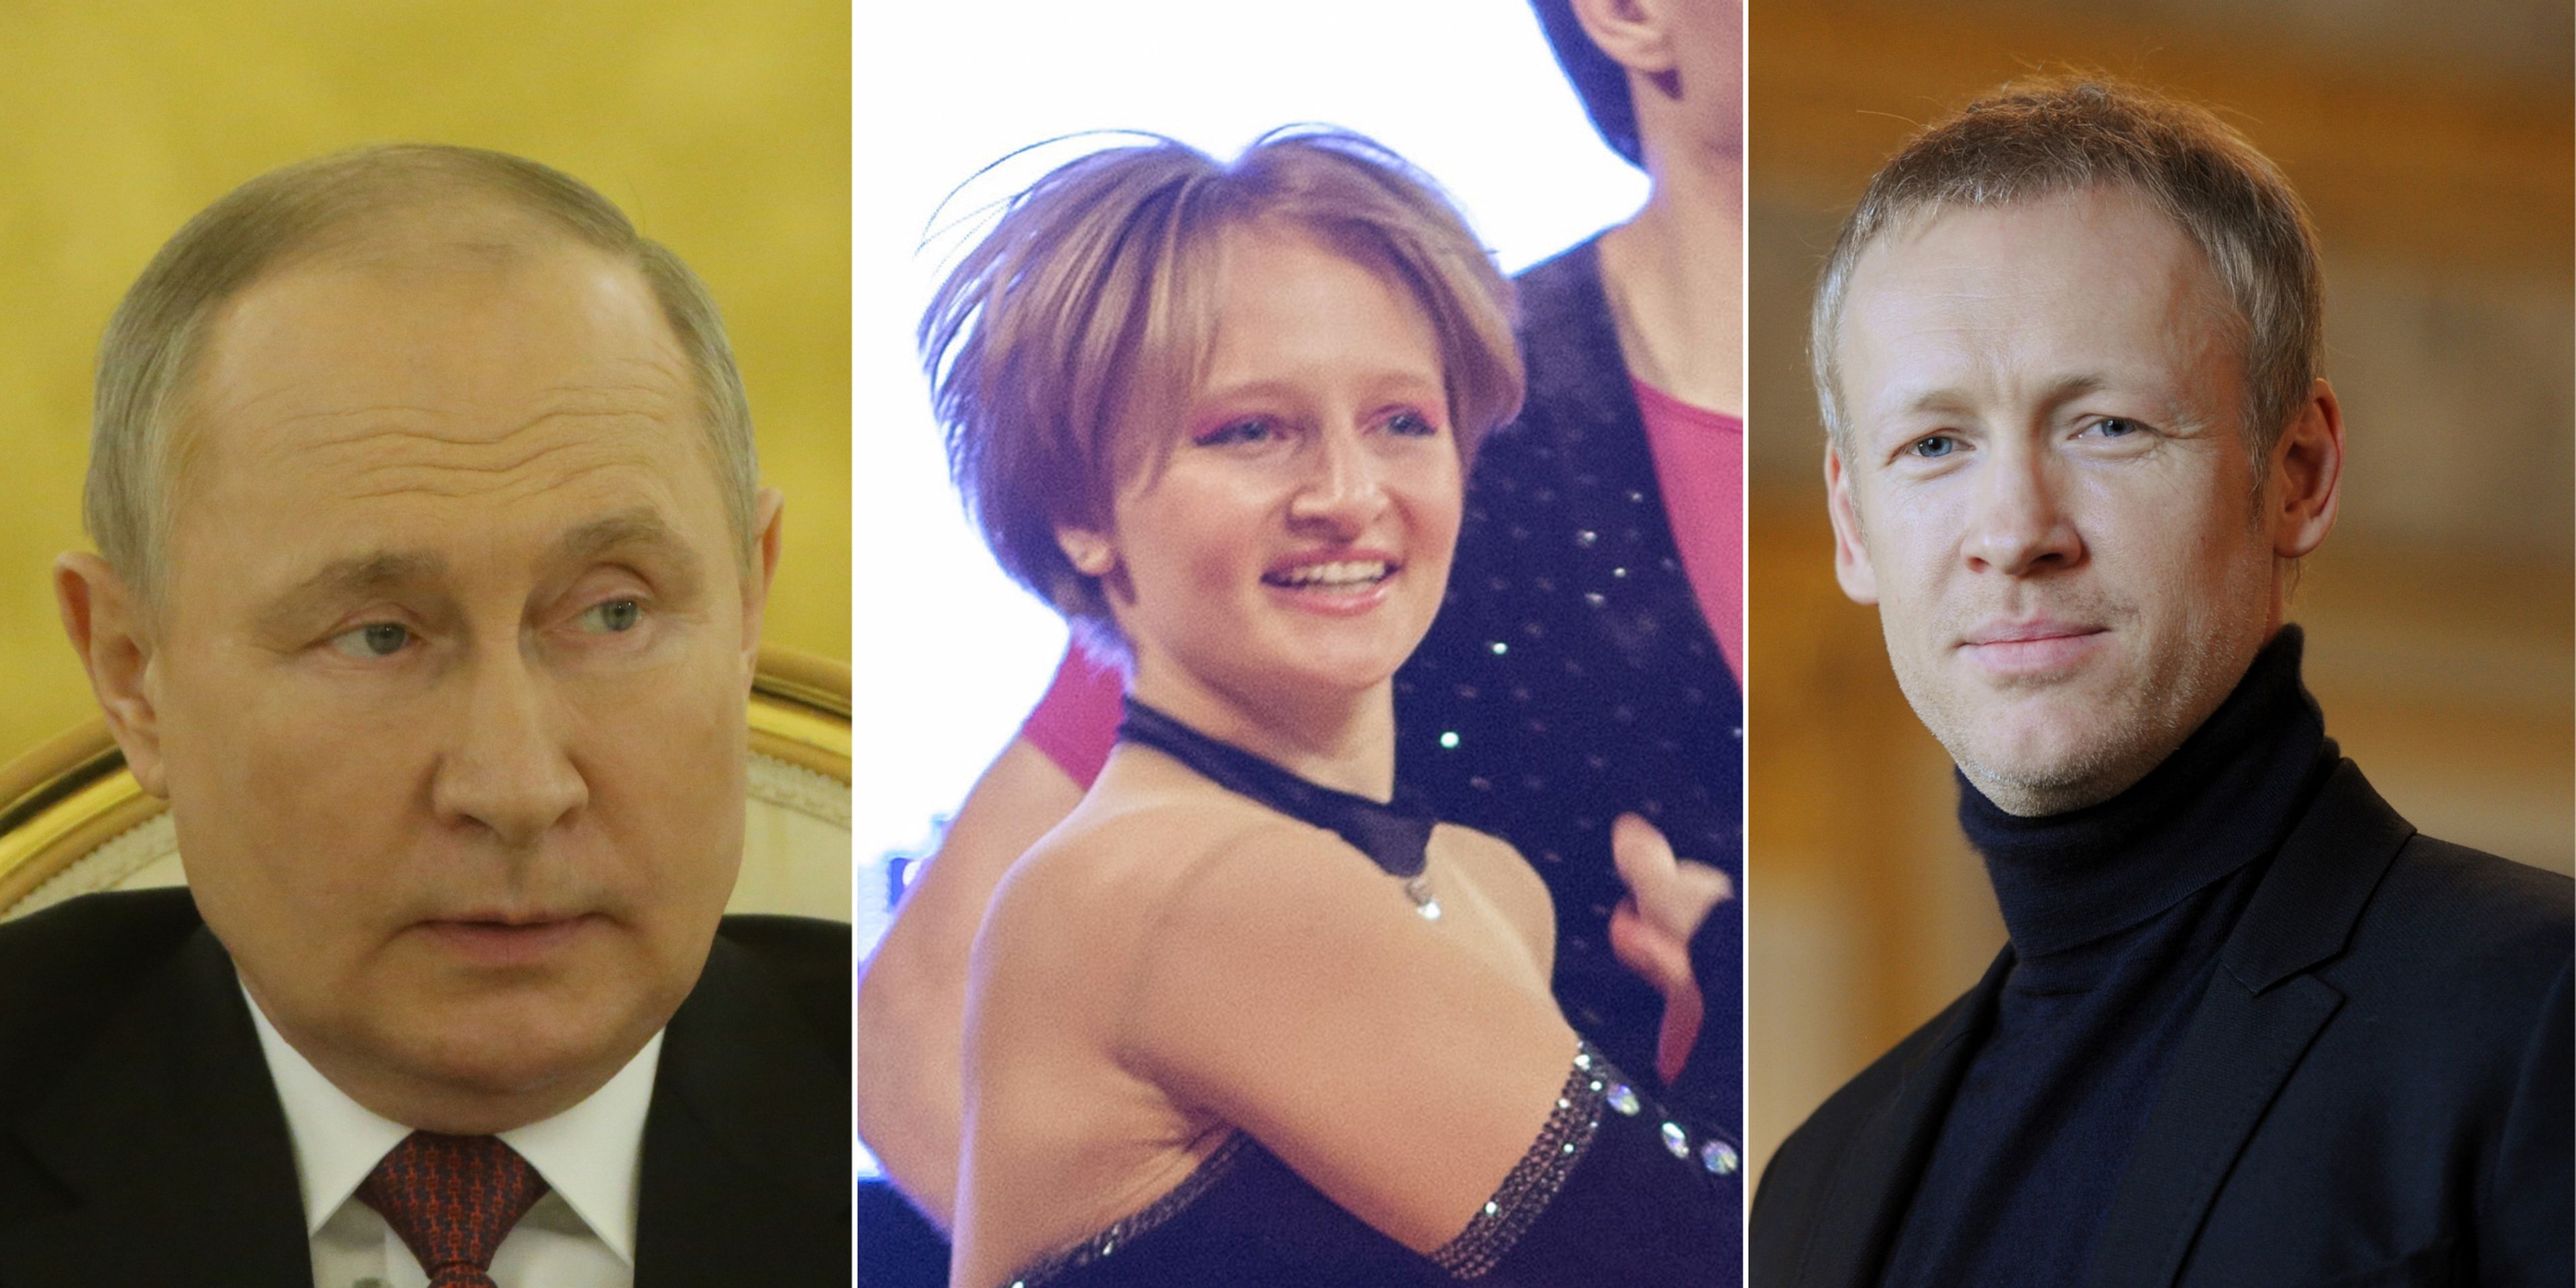 Kateryna Tikhonova, en el centro, es una antigua bailarina acrobática que ahora dirige una incubadora de empresas por valor de 1.700 millones de dólares.